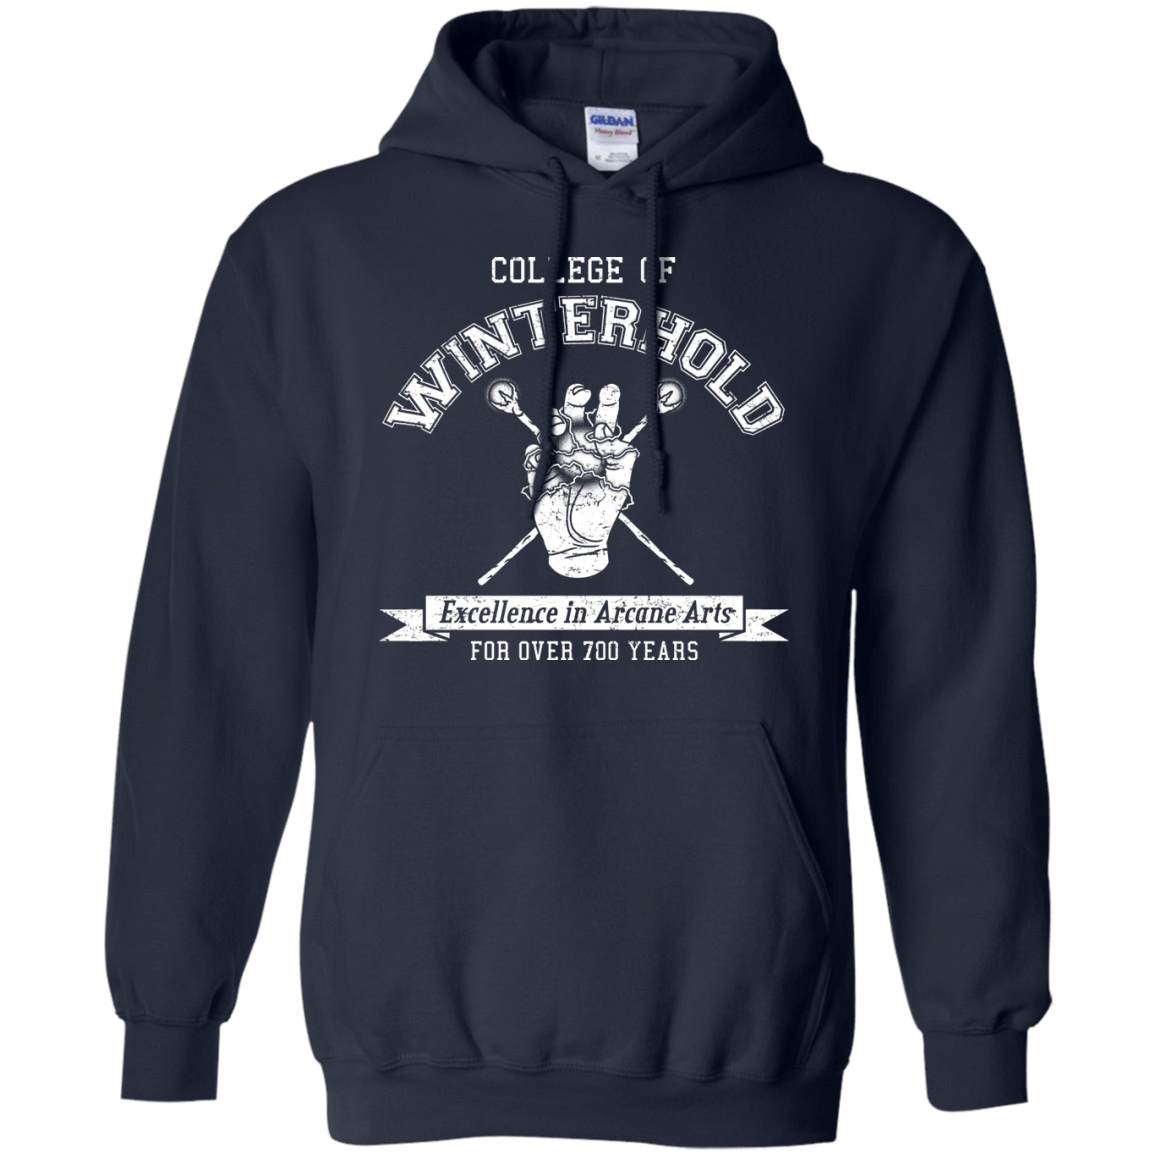 Mens_Hoodie Sweatshirts Navy / Small College of Winterhold Pullover Hoodie